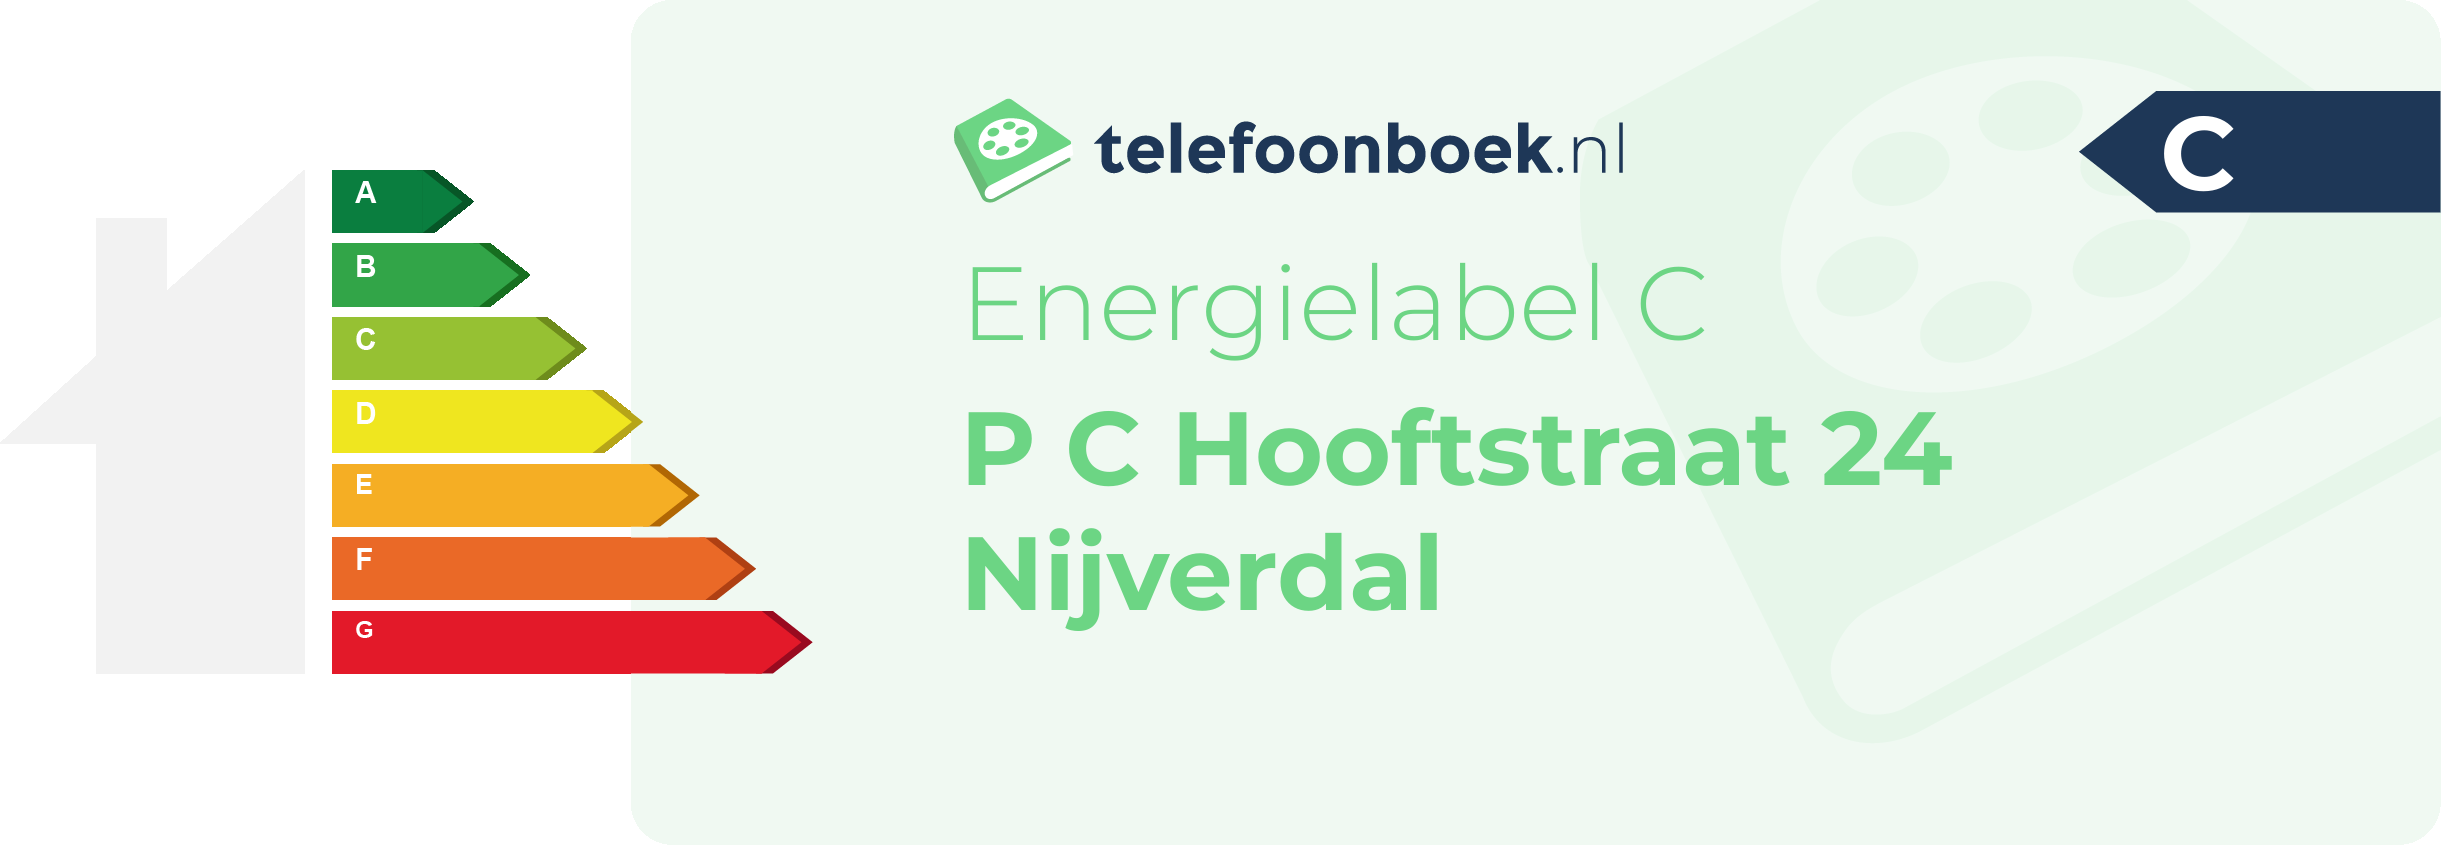 Energielabel P C Hooftstraat 24 Nijverdal